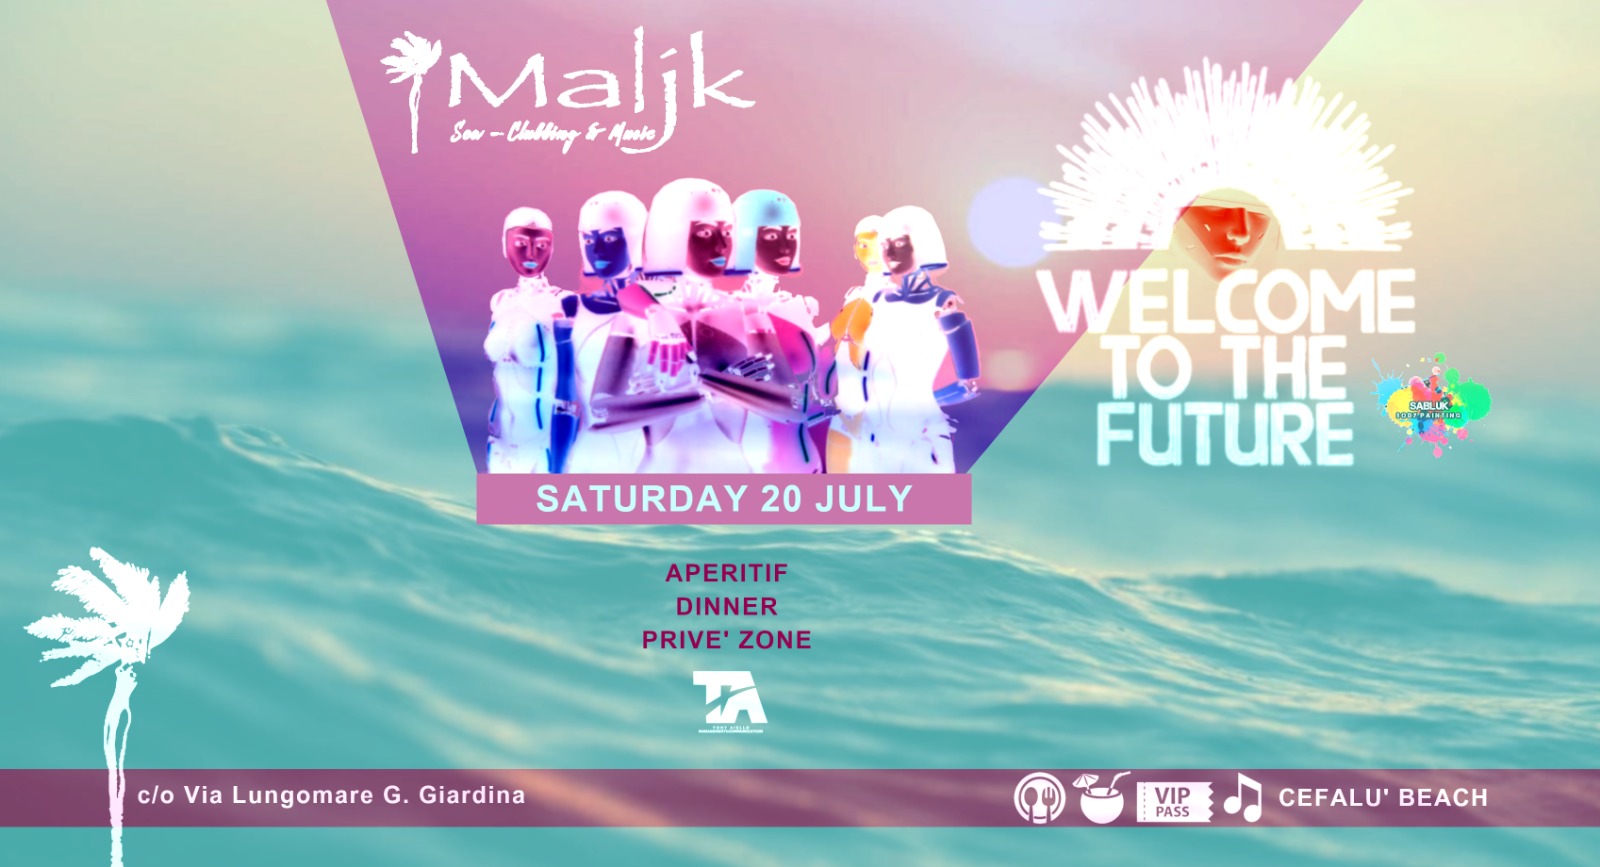 Sabato 20 Luglio Welcome To The Future - Maljk sulla spiaggia di Cefalù